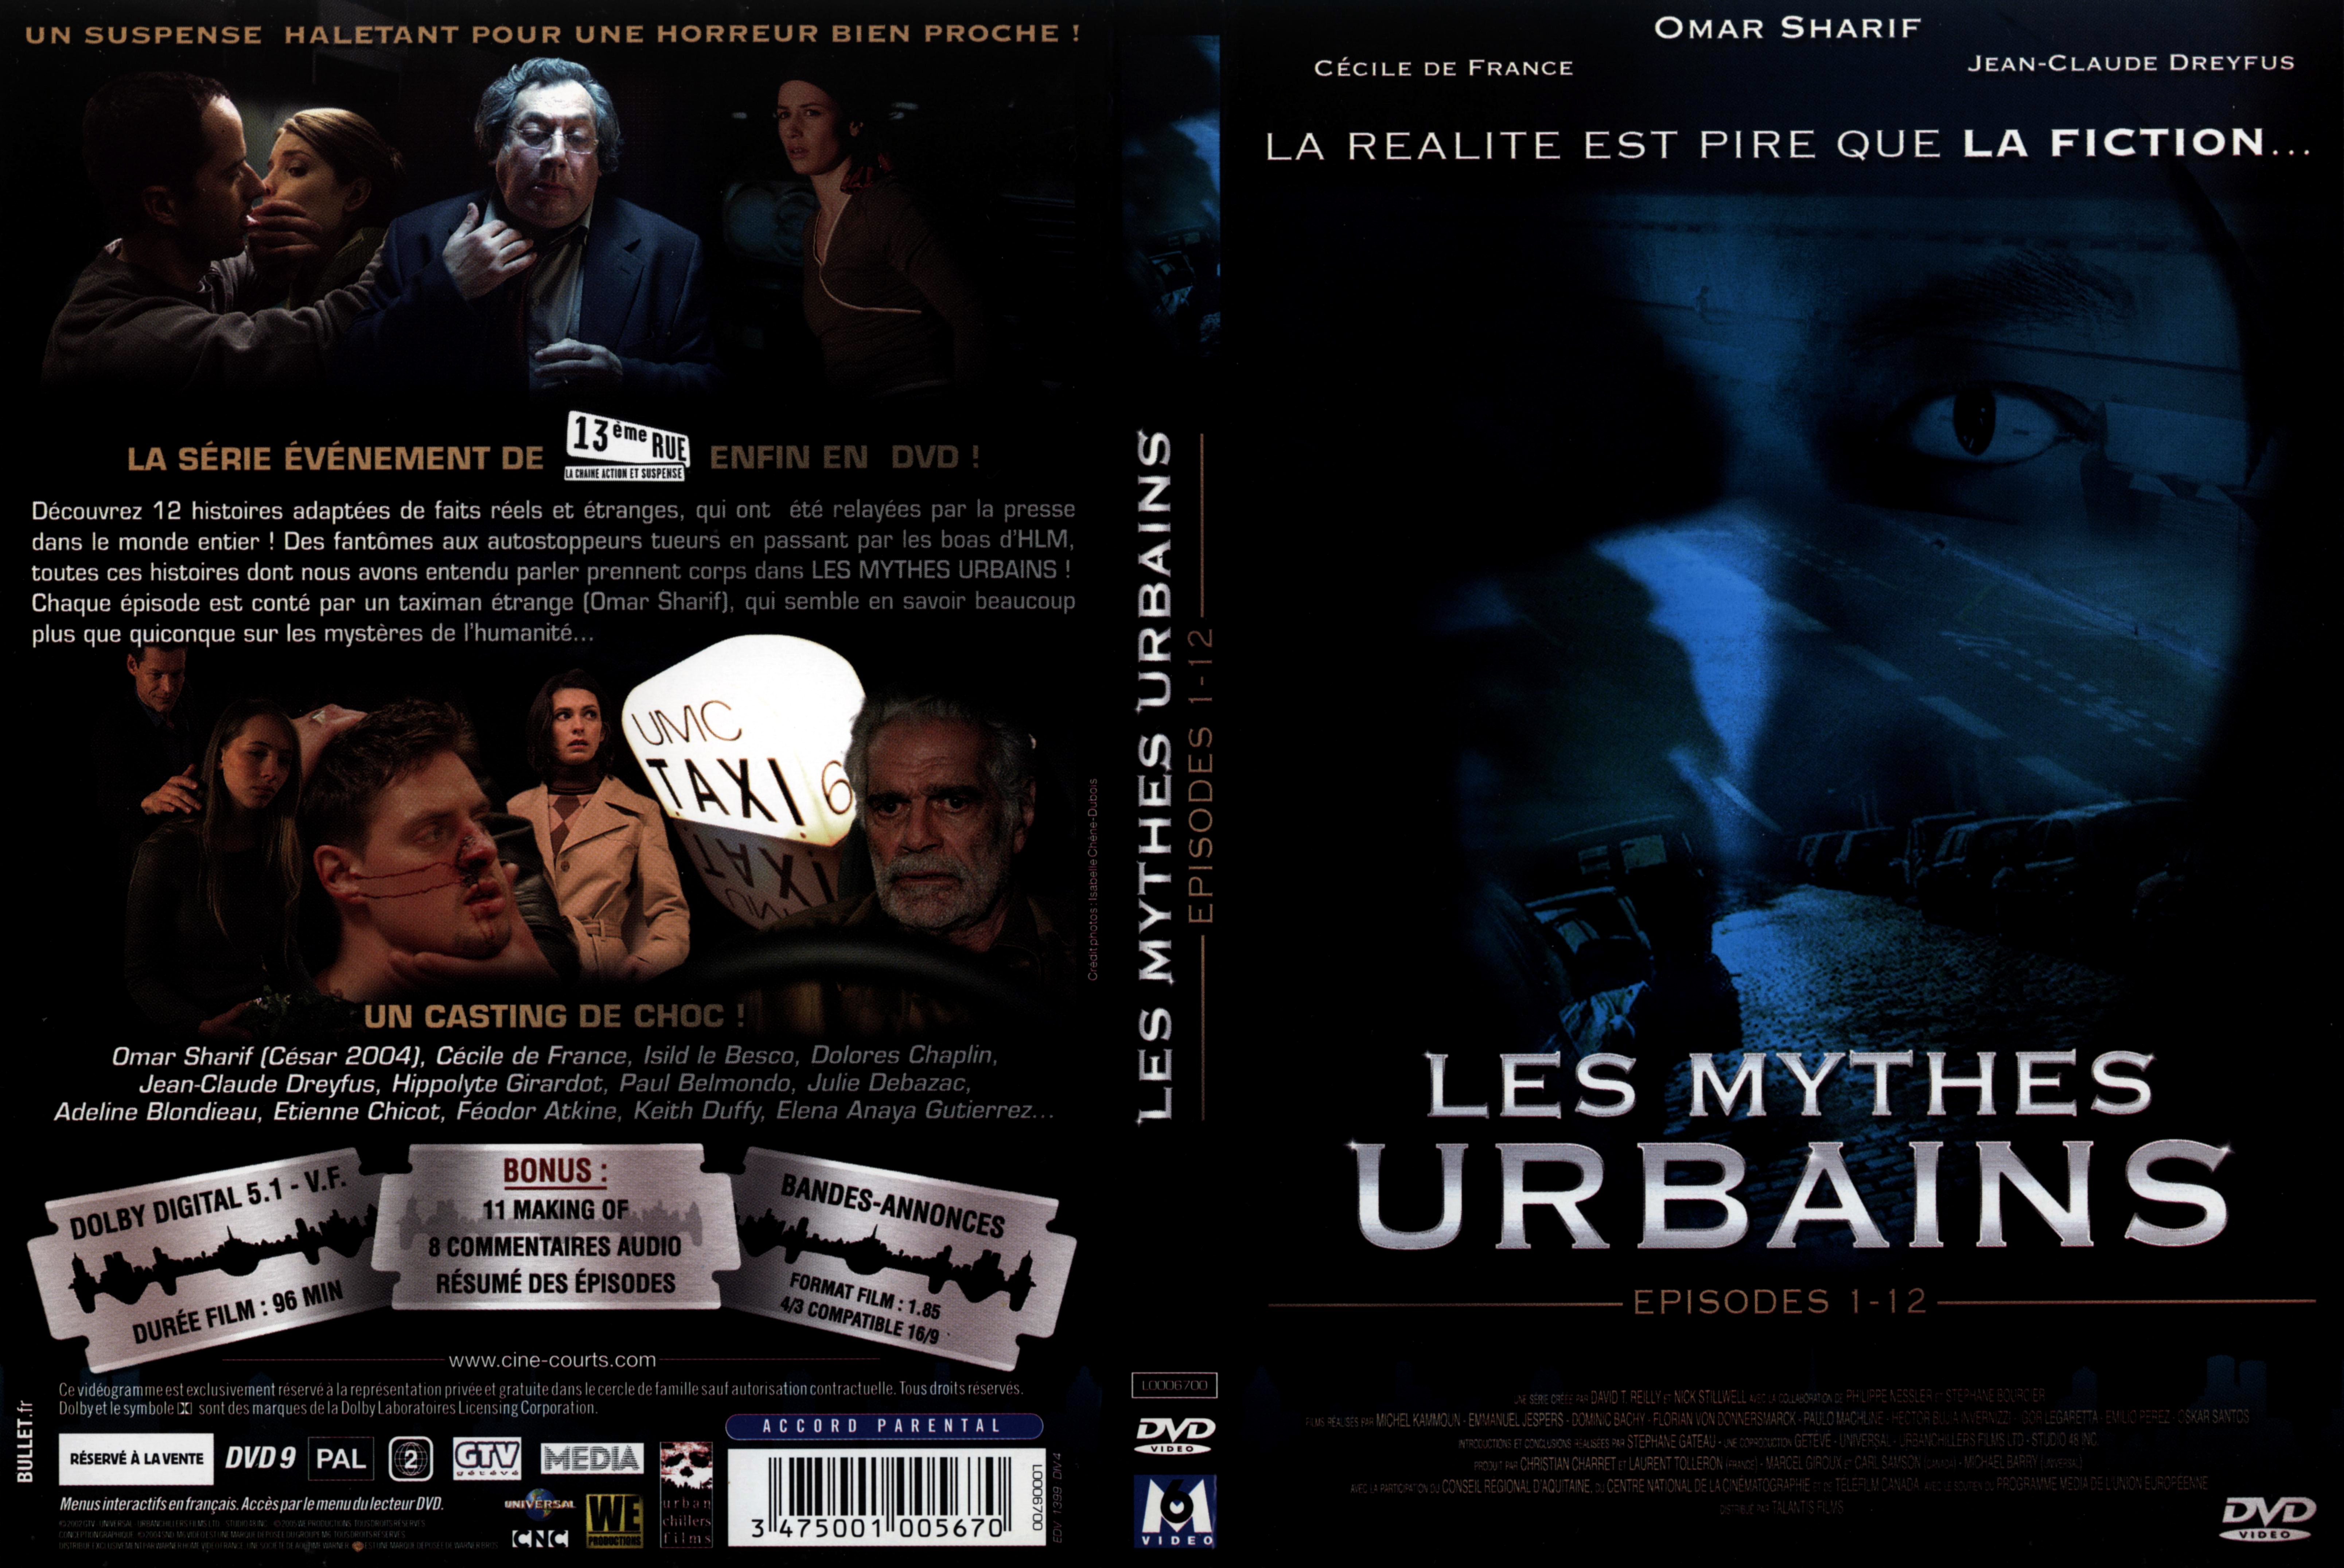 Jaquette DVD Les mythes urbains vol 1